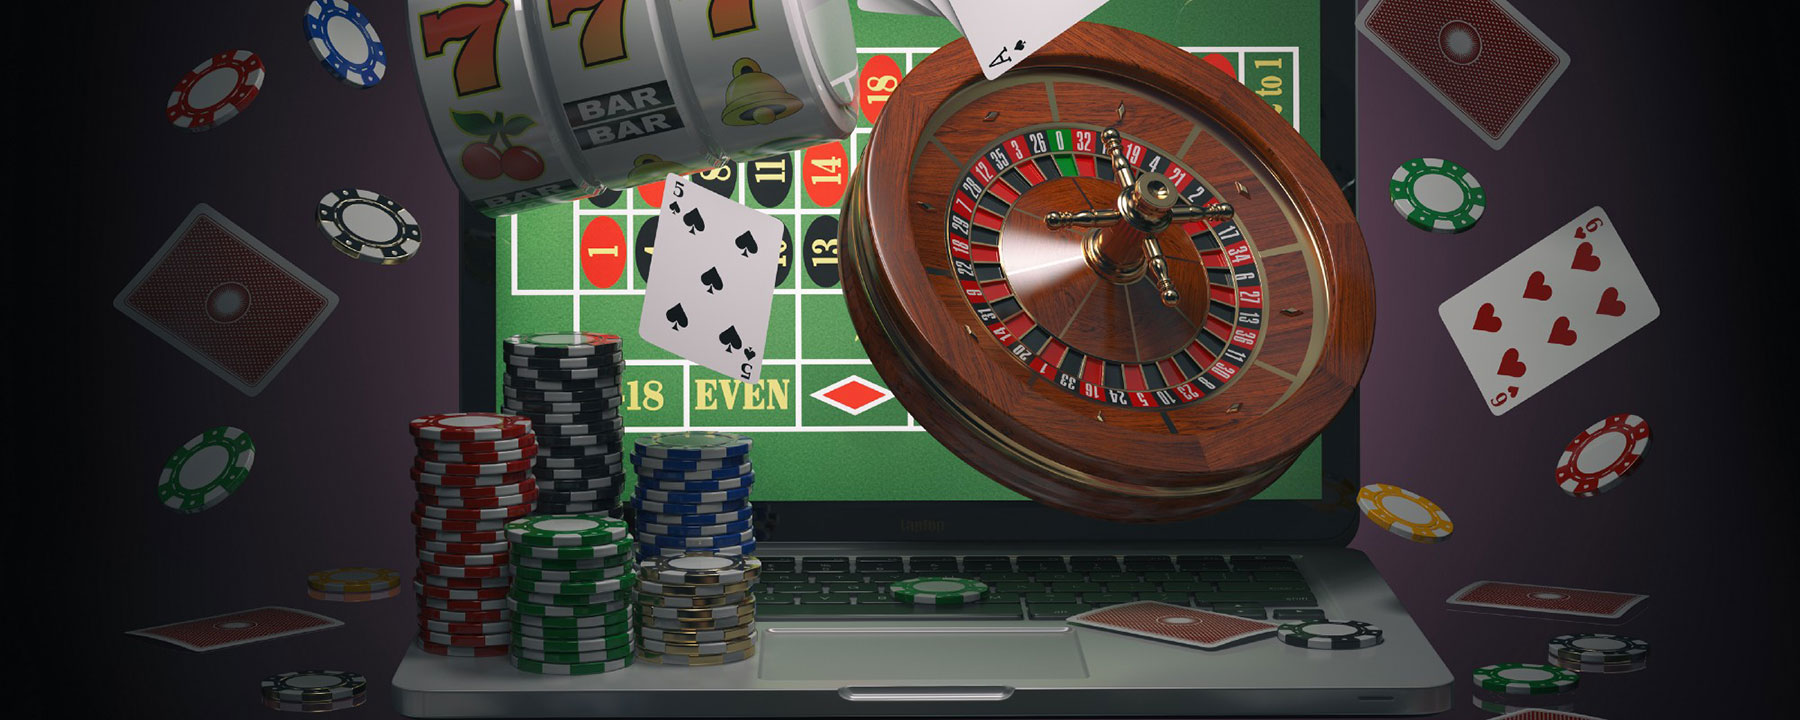 Рейтинг интернет казино: что необходимо знать гемблеру при подборе оператора из ТОПа